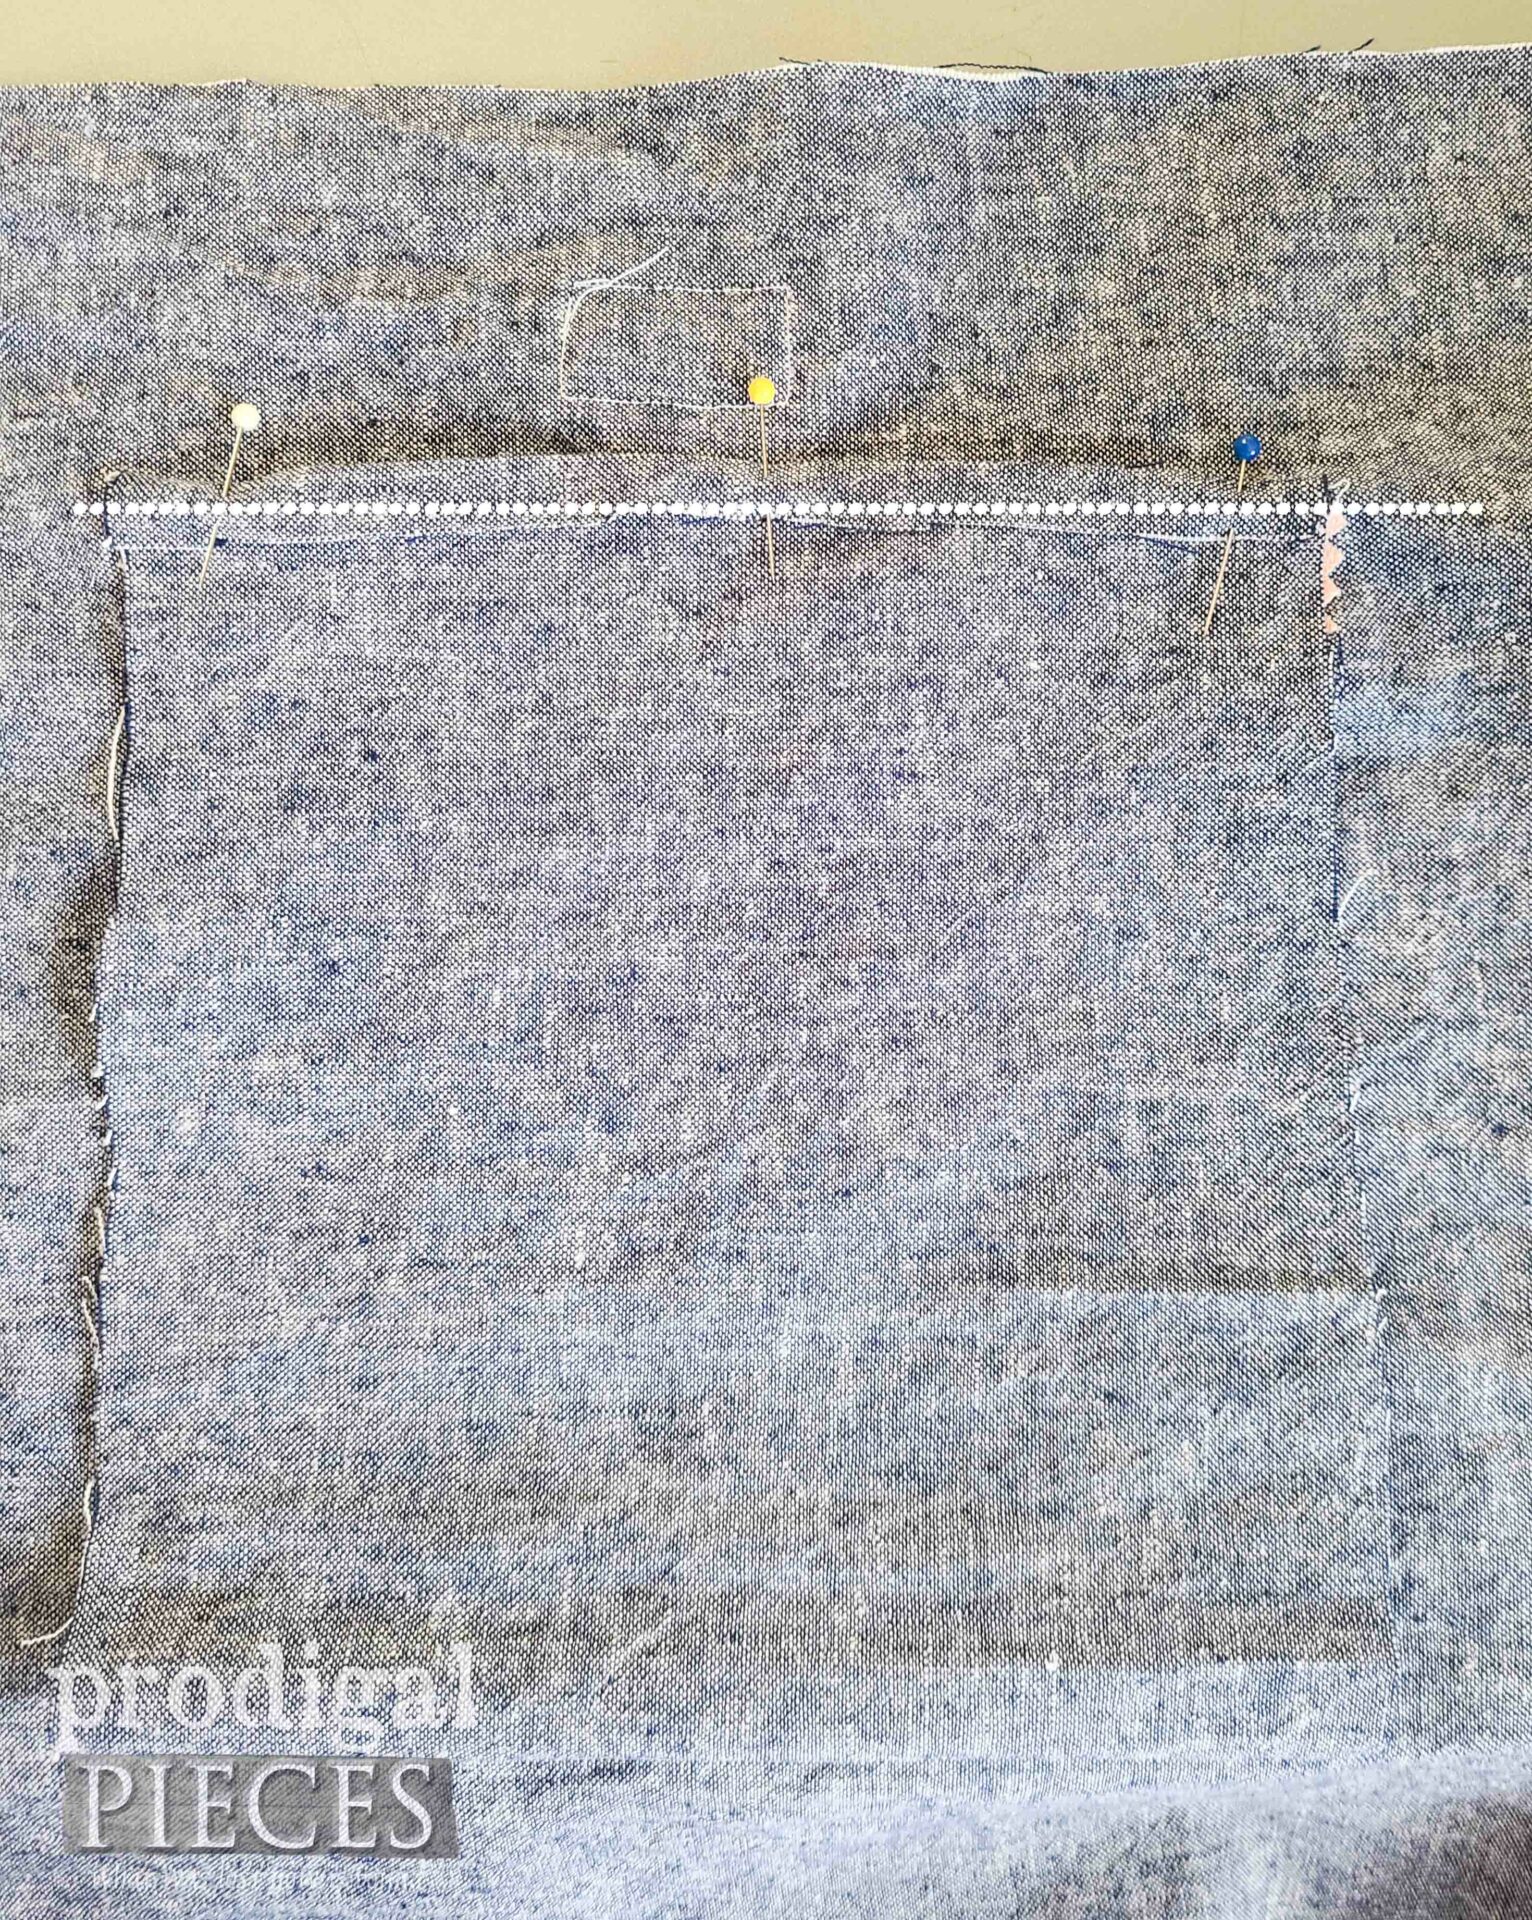 Stitching Bag Pocket Top | prodigalpieces.com #prodigalpieces